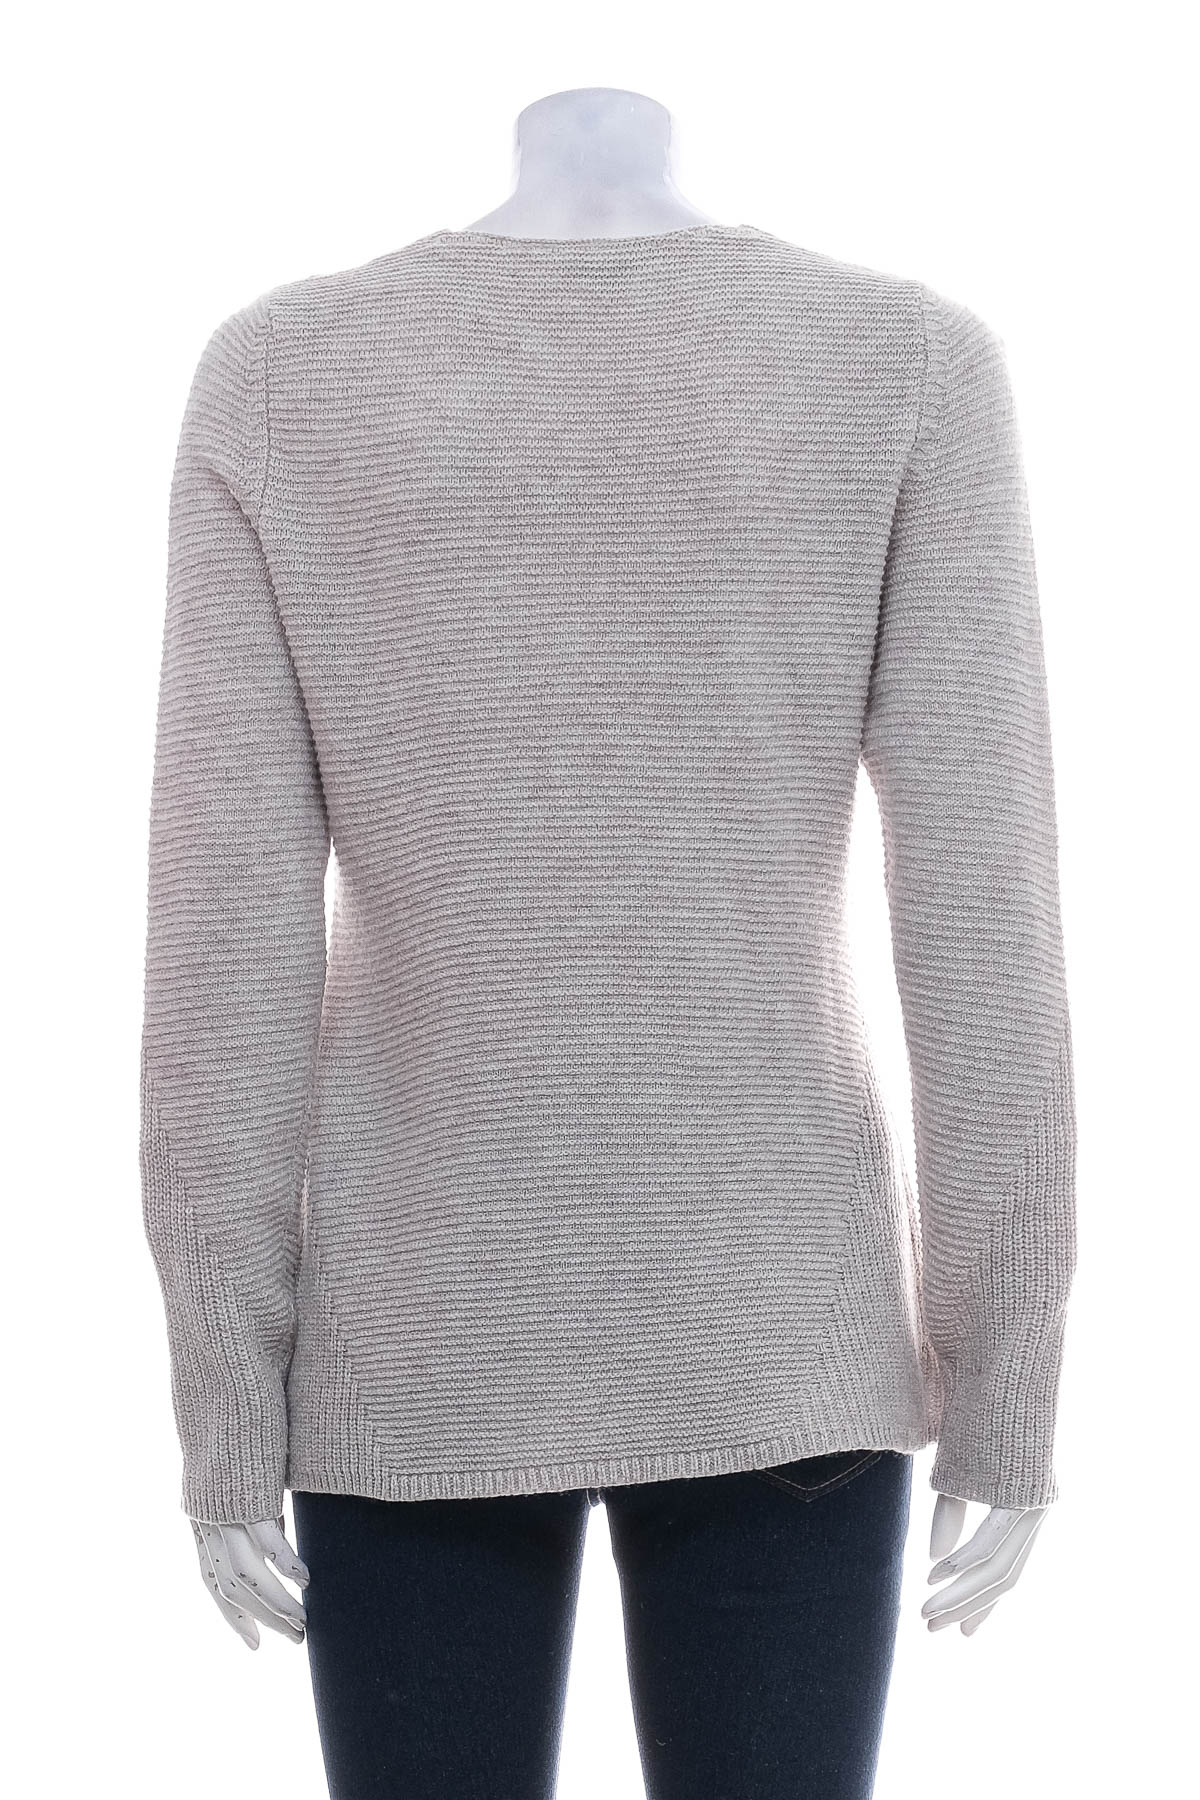 Women's sweater - Comma, - 1